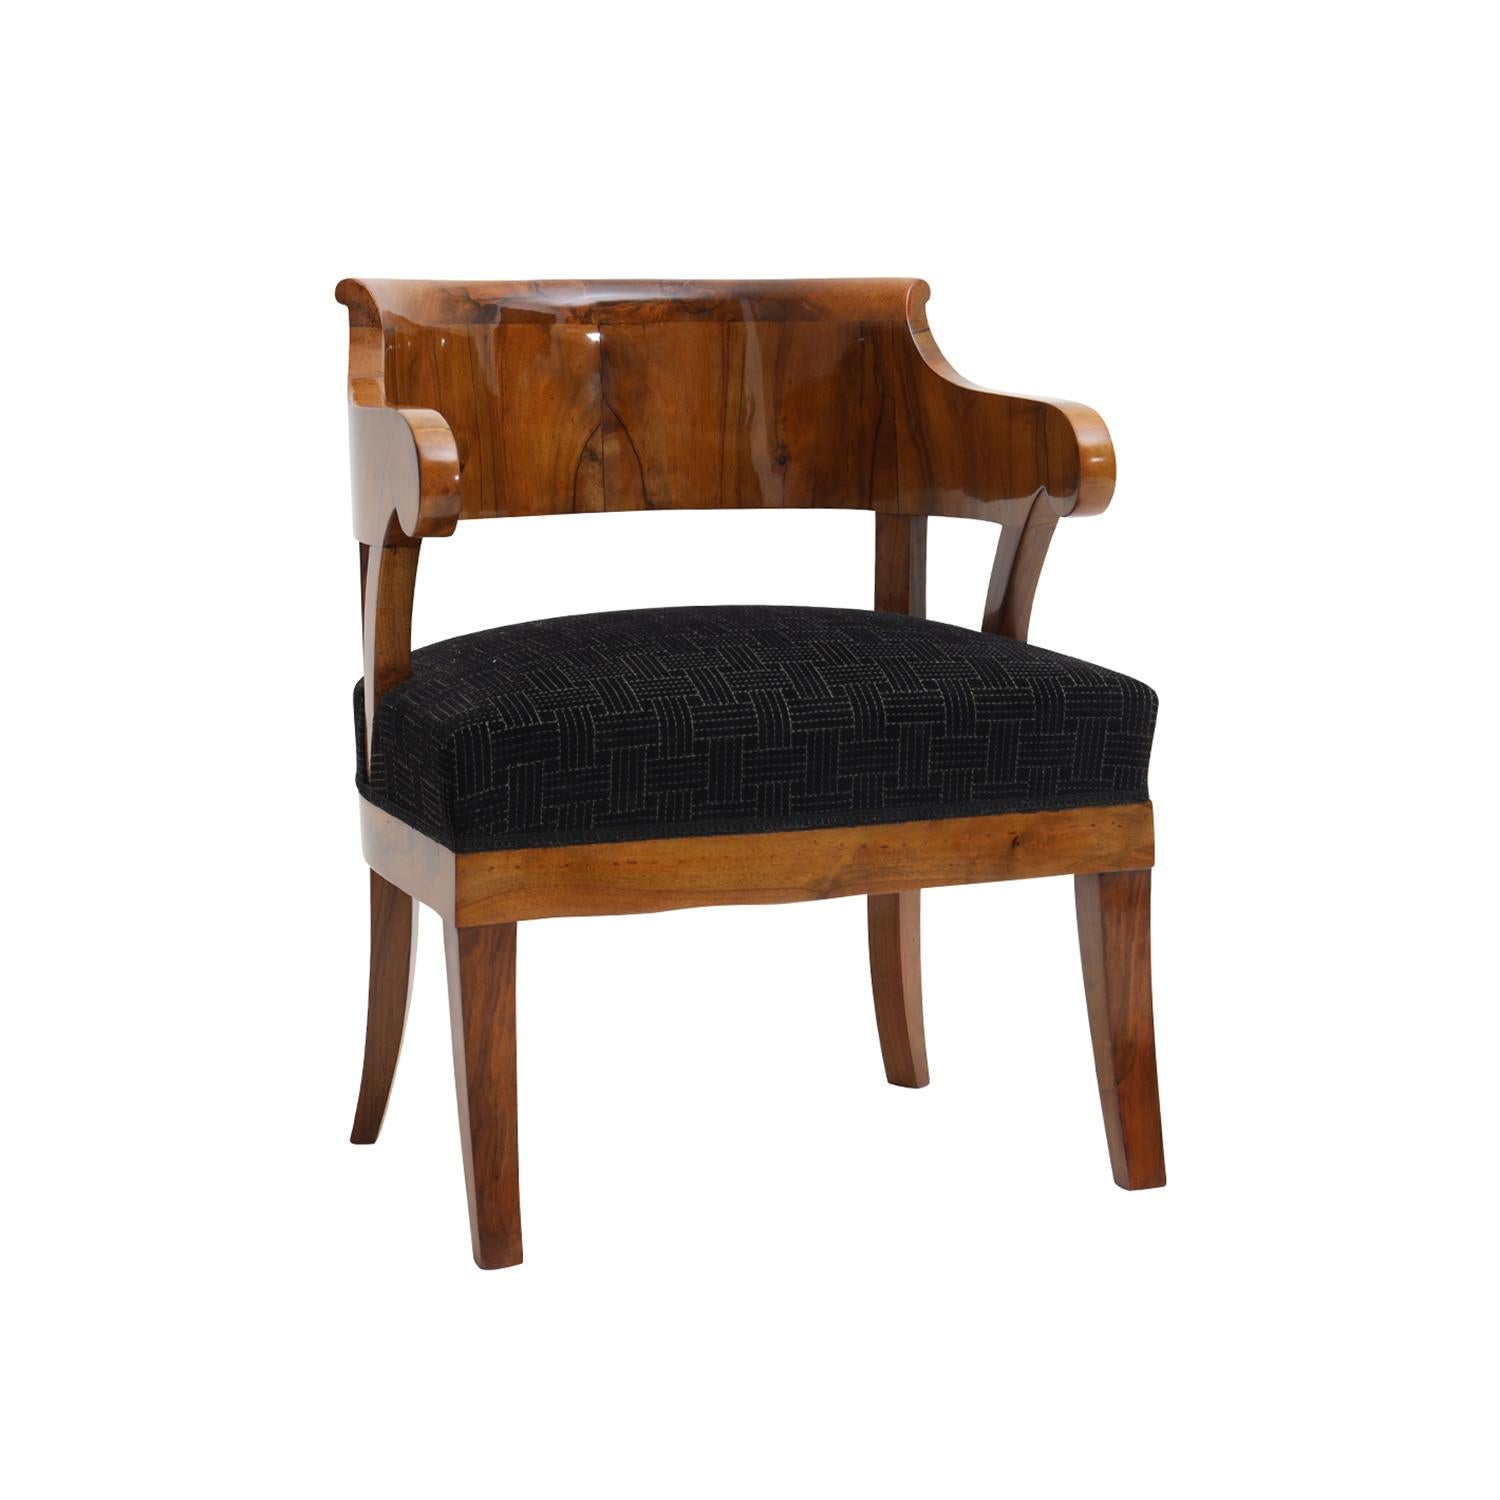 Ancien fauteuil Biedermeier allemand de couleur marron clair, en acajou poli à la gomme-laque et partiellement plaqué, en très bon état. La chaise latérale a un dossier arqué et incurvé reposant sur quatre pieds en bois. Nouvellement tapissé d'un